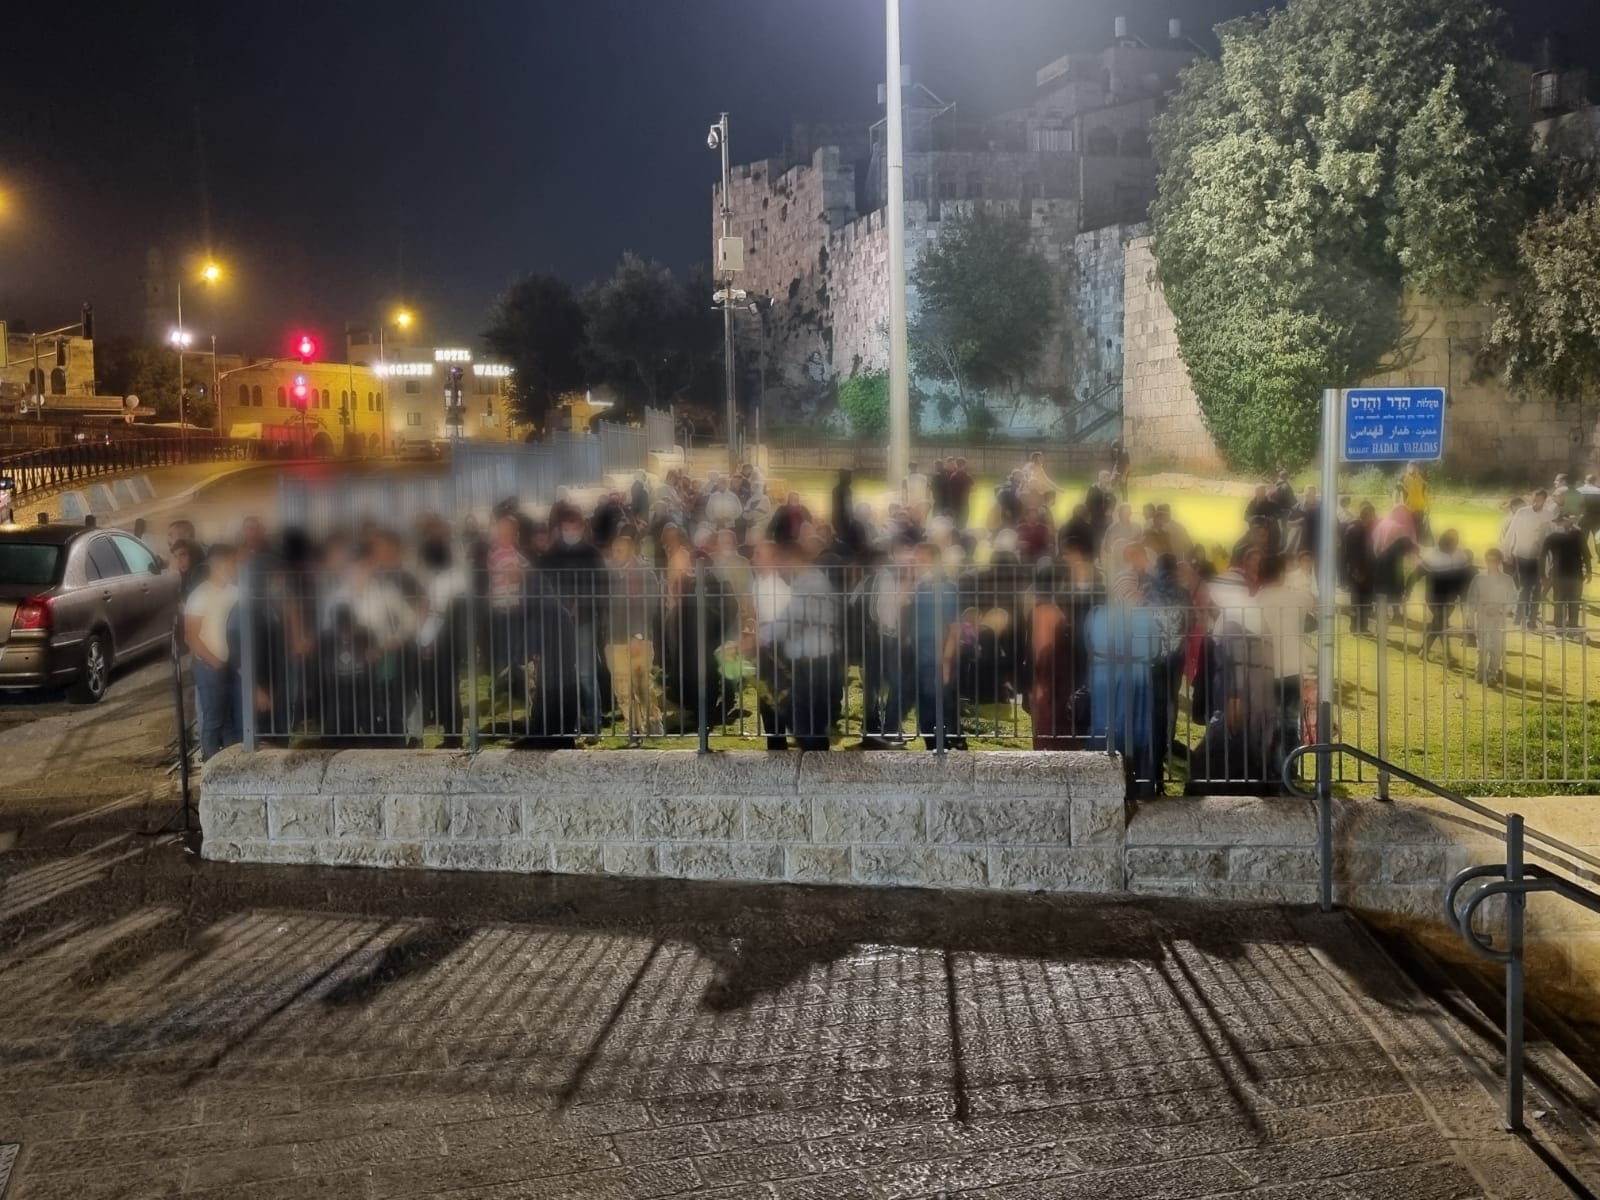 במהלך מבצע לילי: לוחמי משמר הגבול תפסו 694 שוהים בלתי חוקיים בירושלים